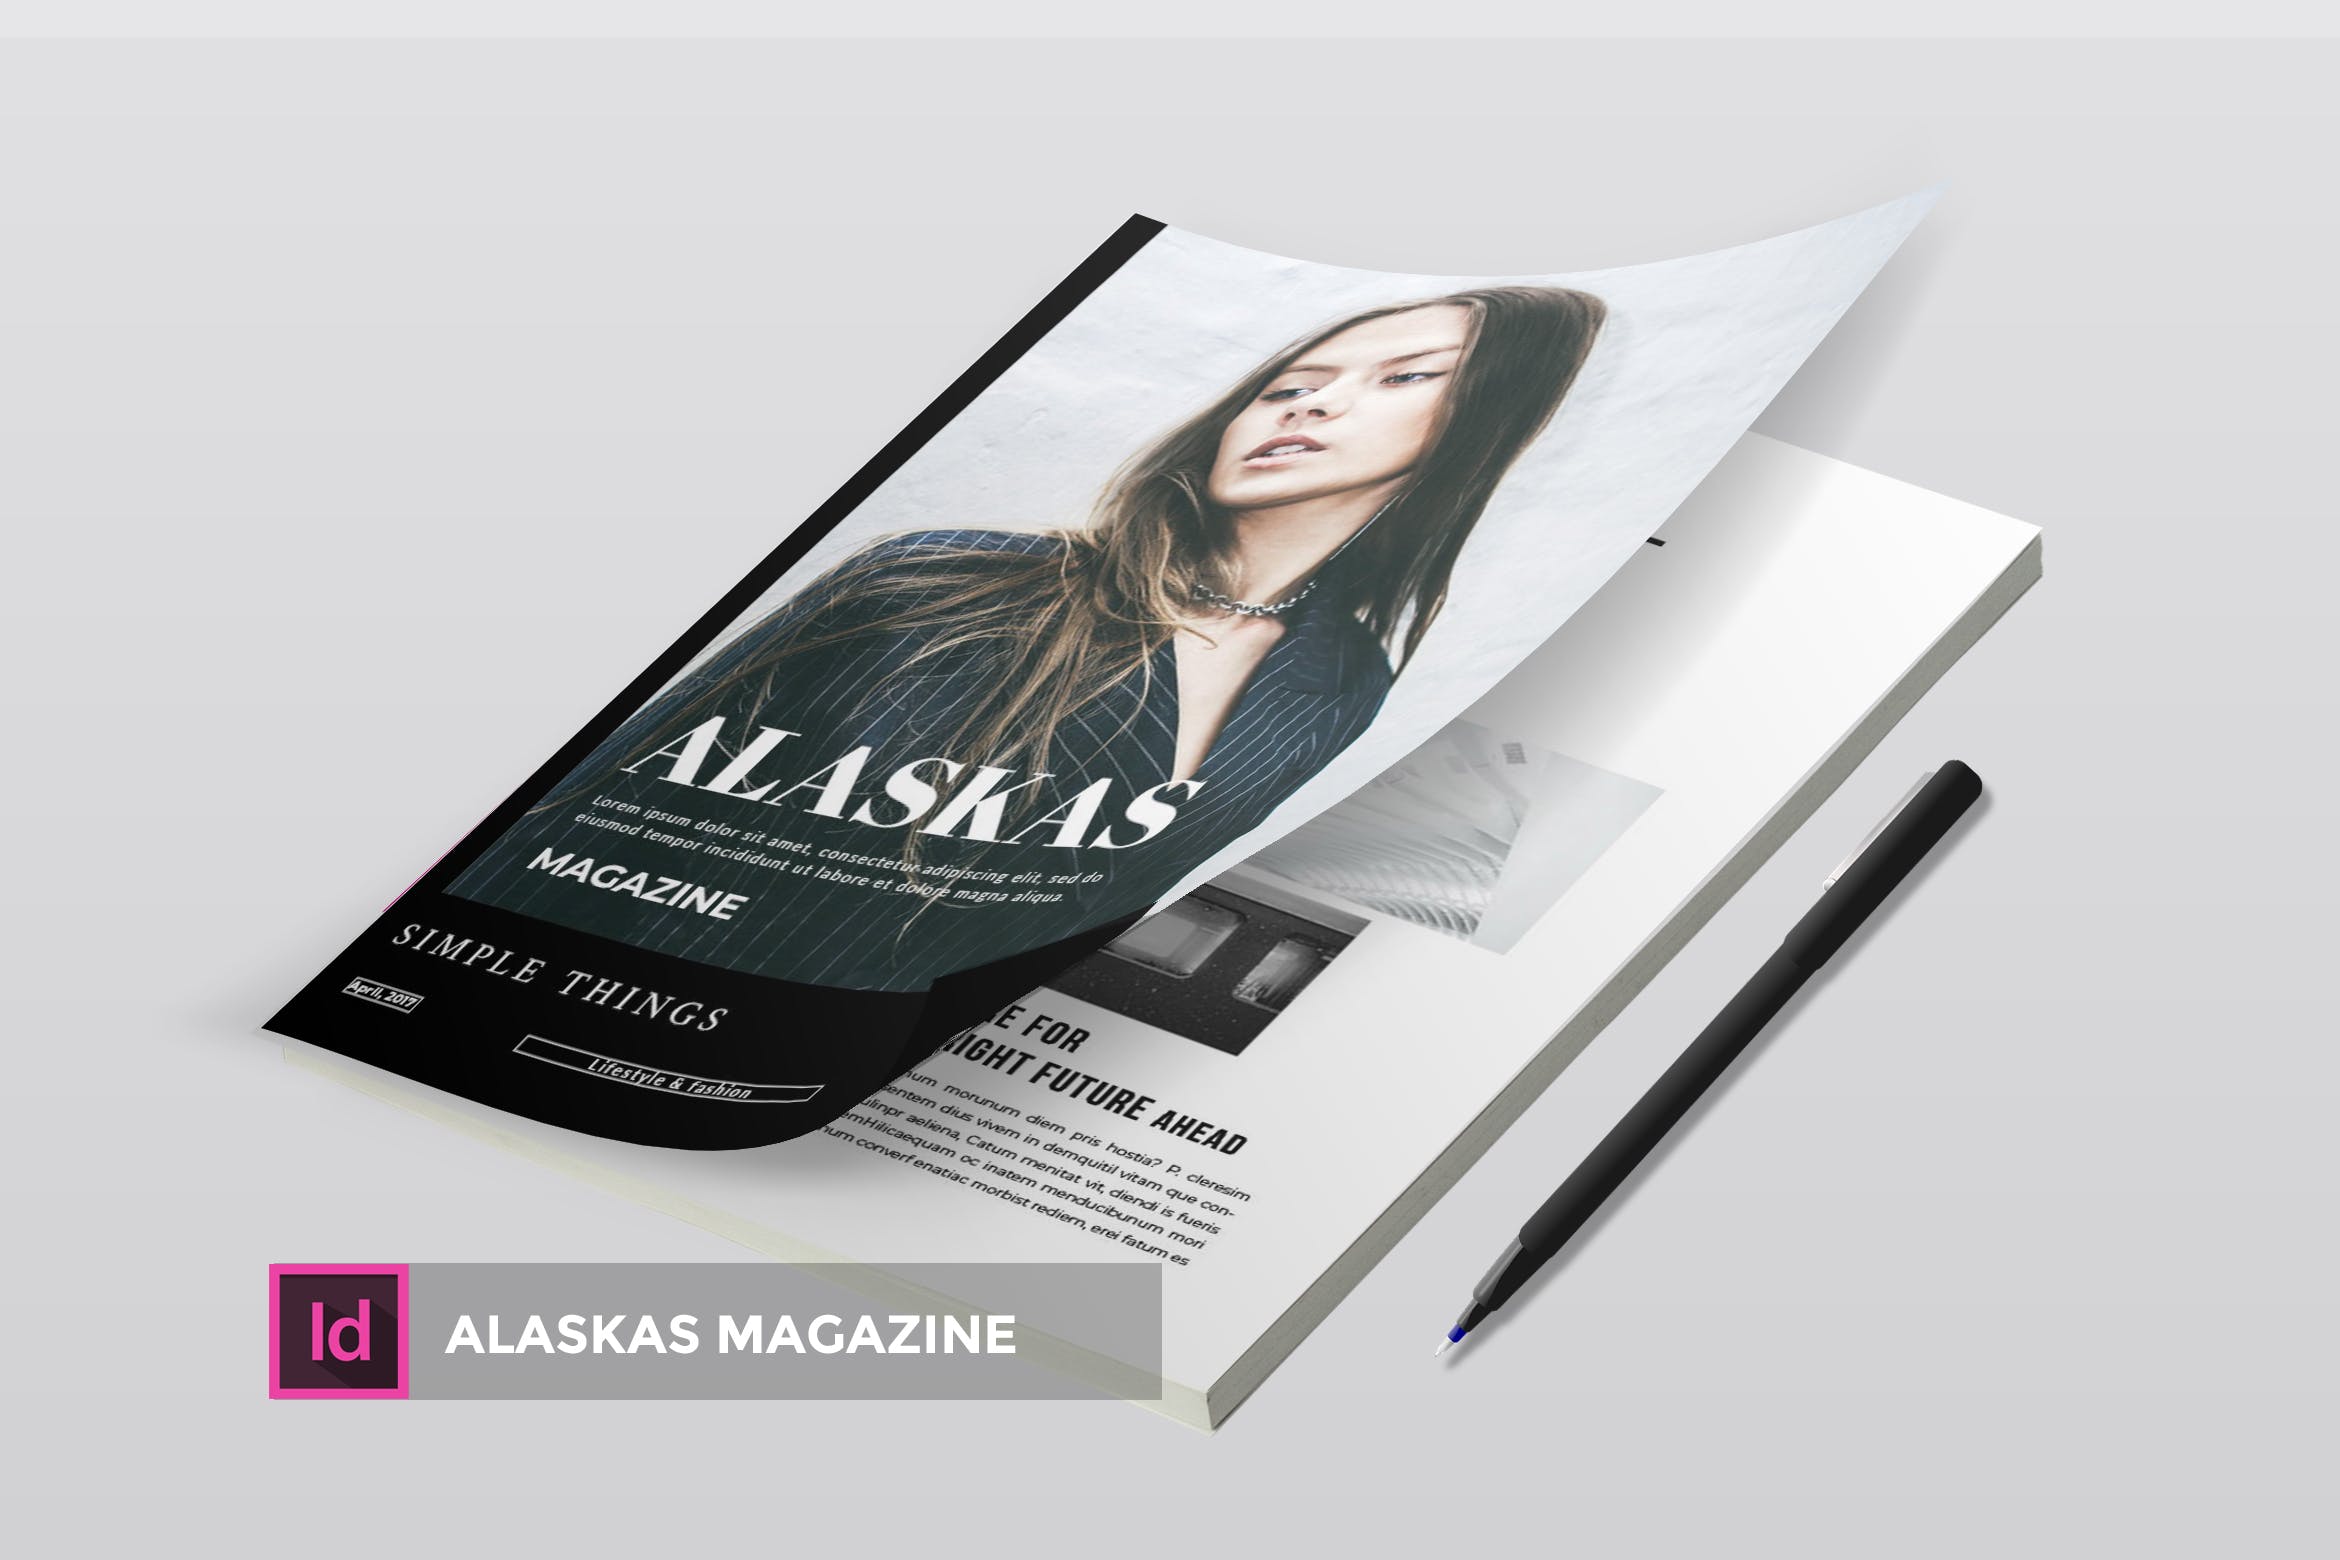 高端人物/服装/访谈主题第一素材精选杂志版式排版设计INDD模板 Alaskas | Magazine Template插图